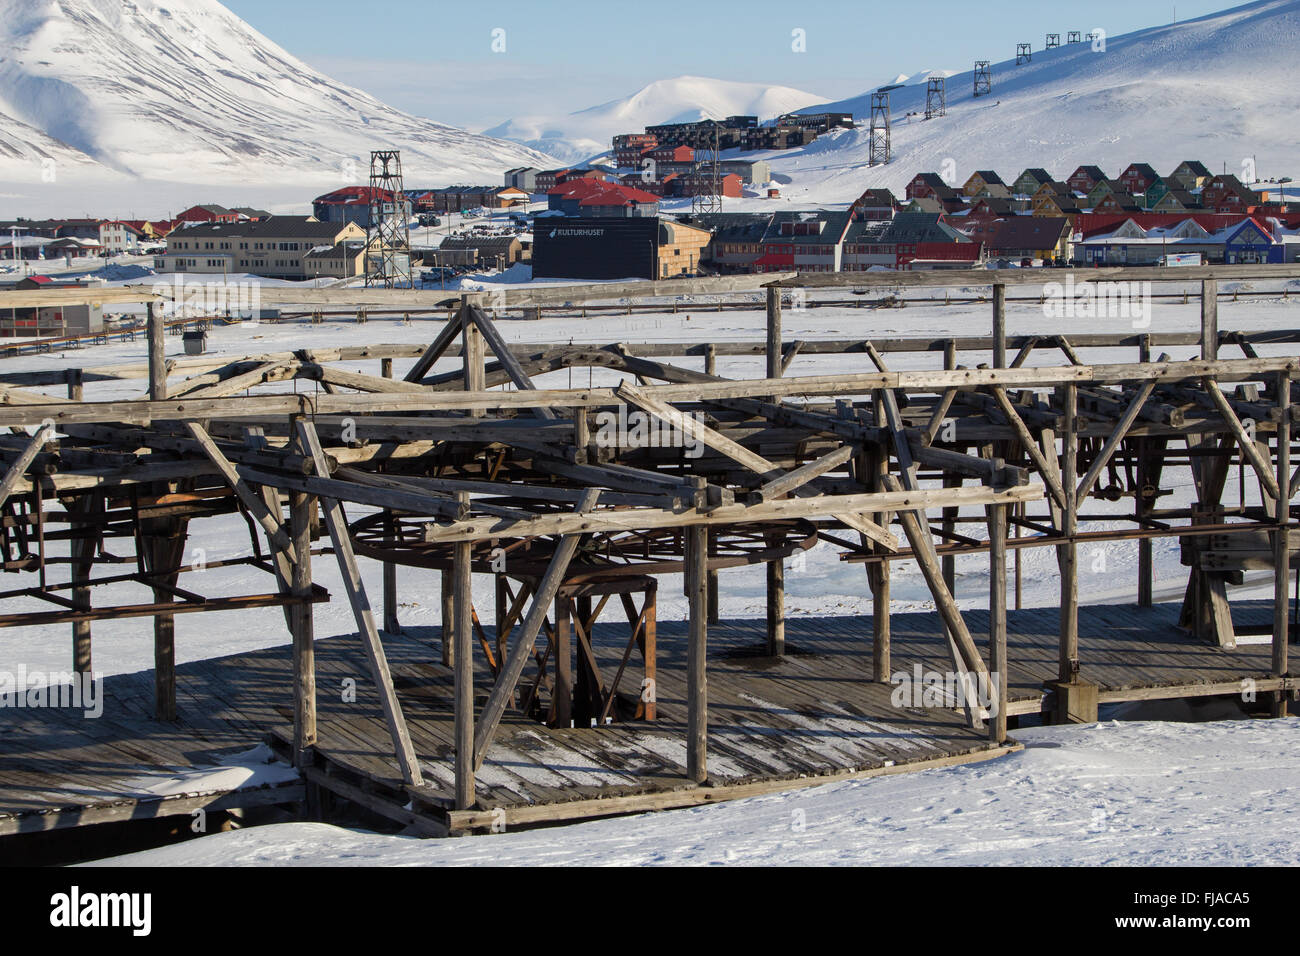 Meccanismi del vecchio sistema per il trasporto del carbone a Longyearbyen, Spitsbergen Svalbard. La Norvegia. Attualmente non funzionante. Foto Stock